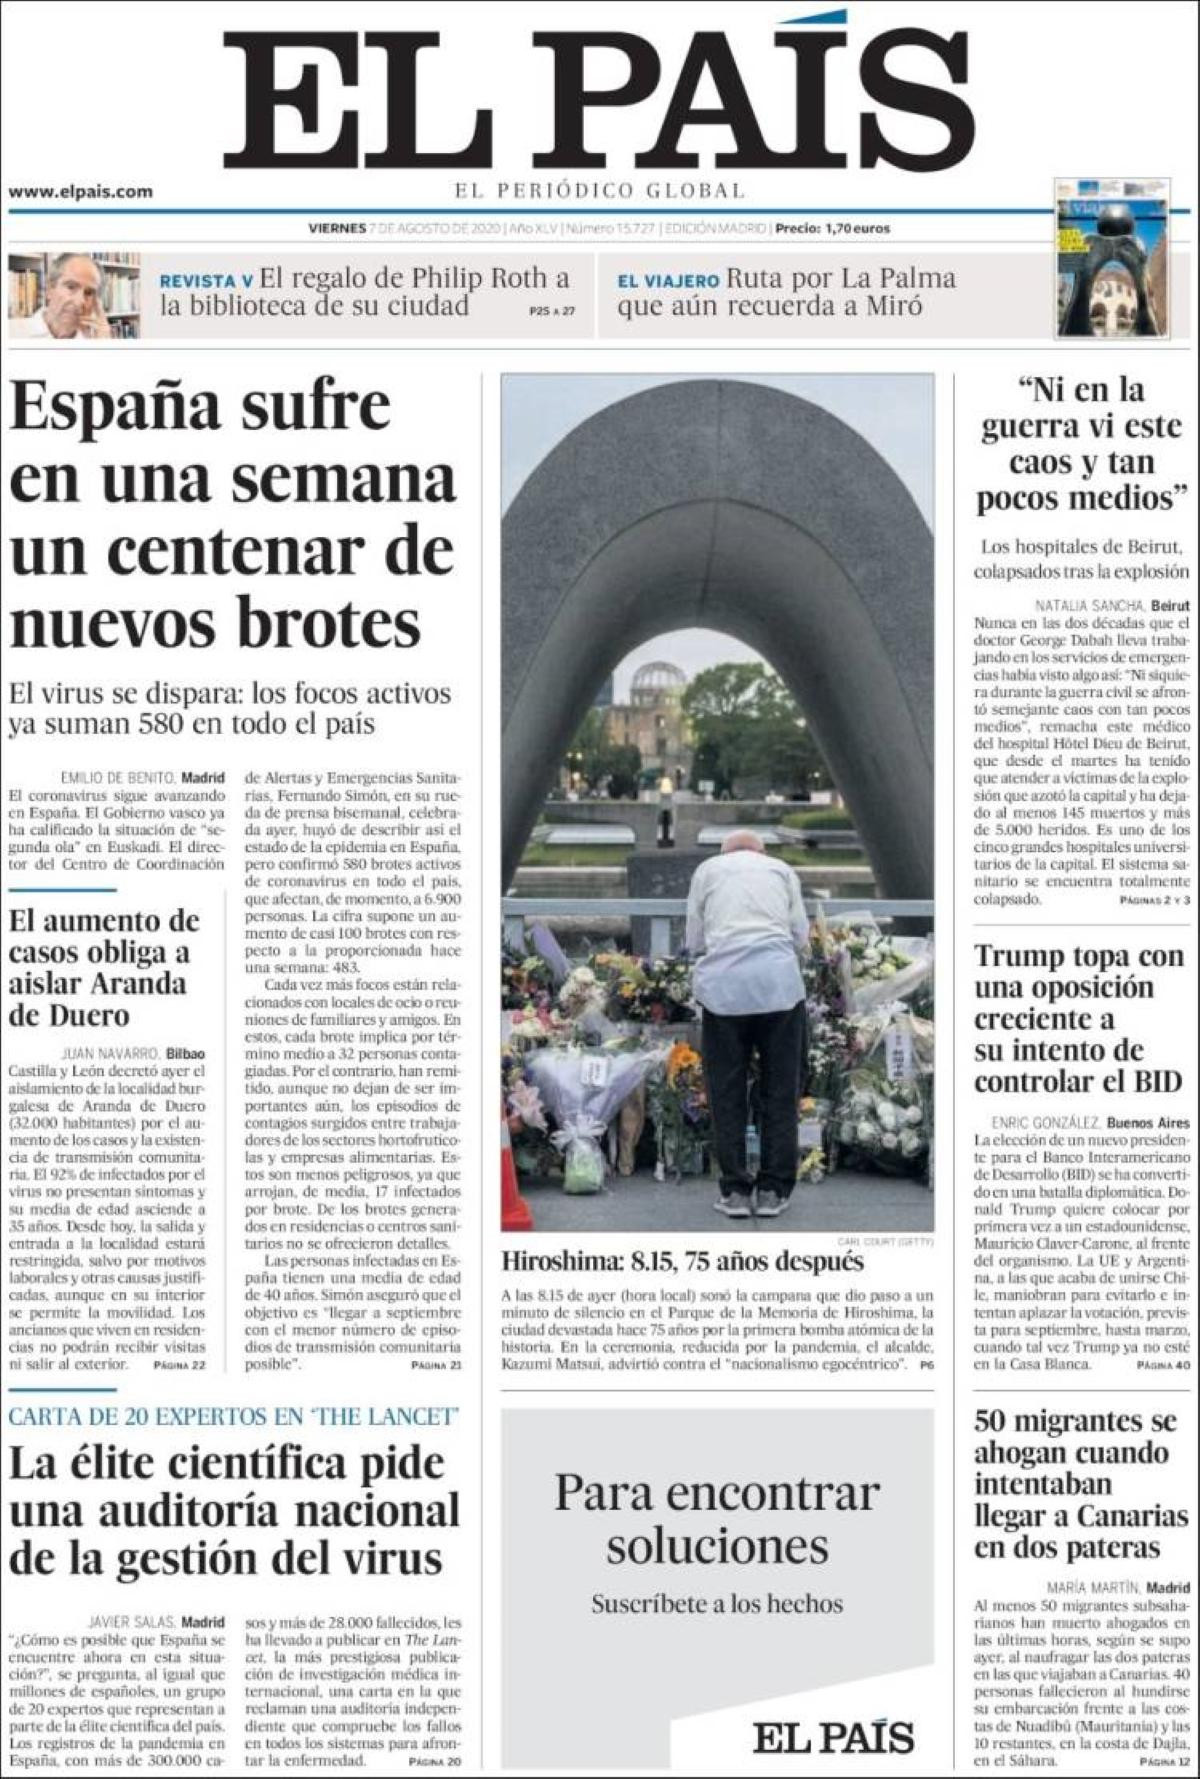 Las primeras planas de 'El País' tratan sobre el coronavirus y los expertos sanitarios